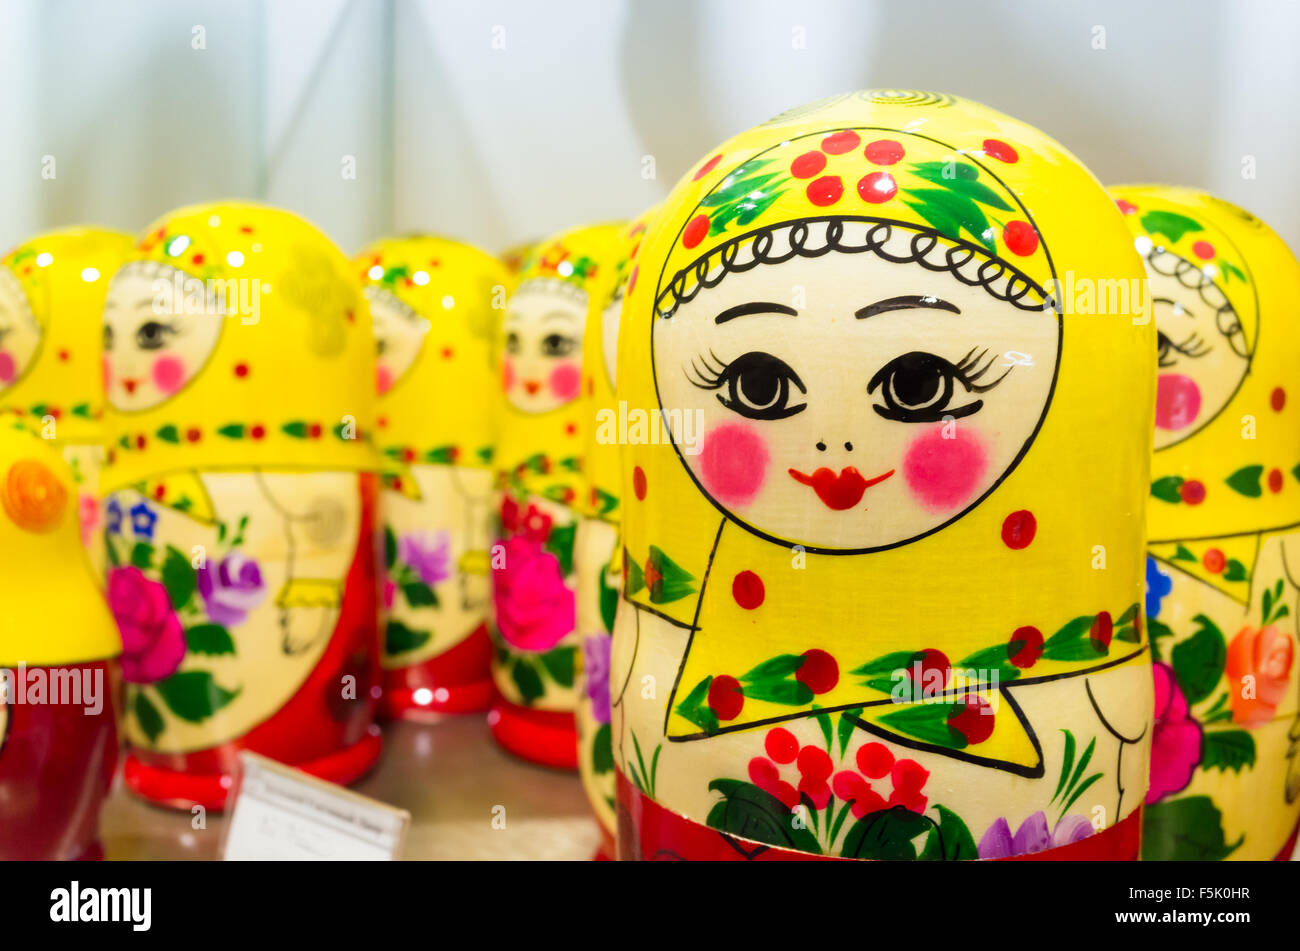 Bunten Matroschka Puppen Puppen auch bekannt als eine russische Verschachtelung. Beliebtes Mitbringsel Stockfoto